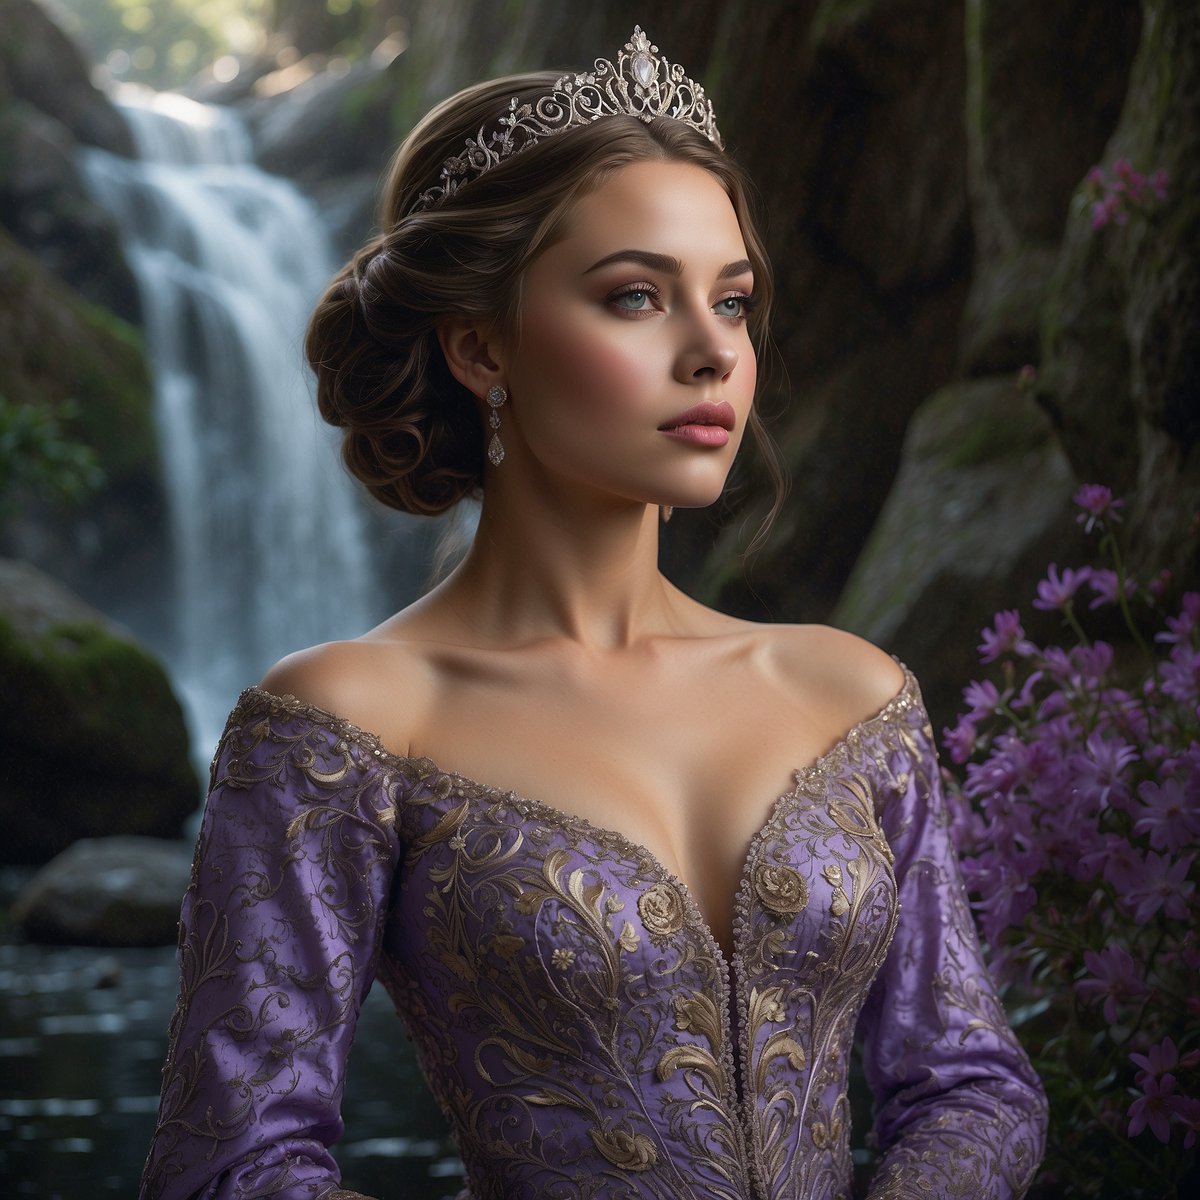 Princess, pretty in purple #leonardoai